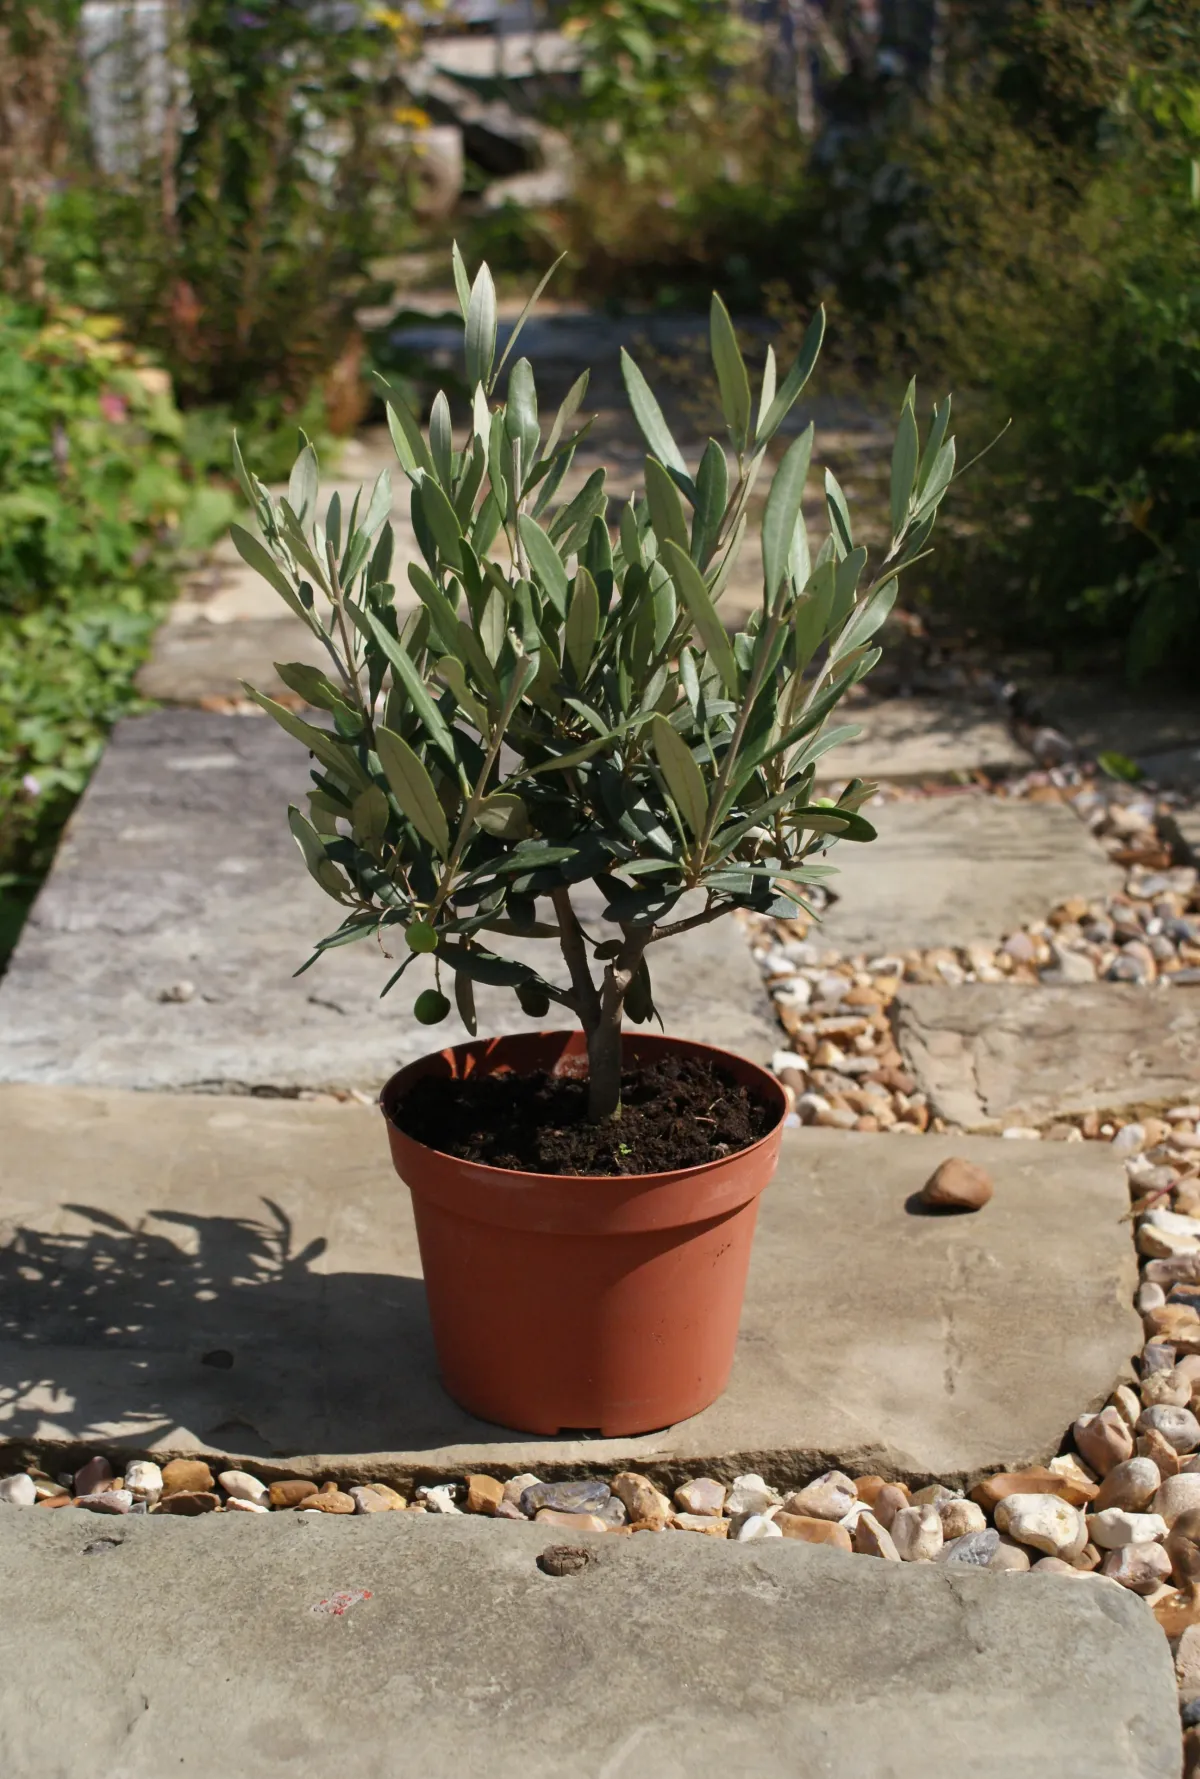 olivenbaum überwintern pflegetipps notwendige bedingungen